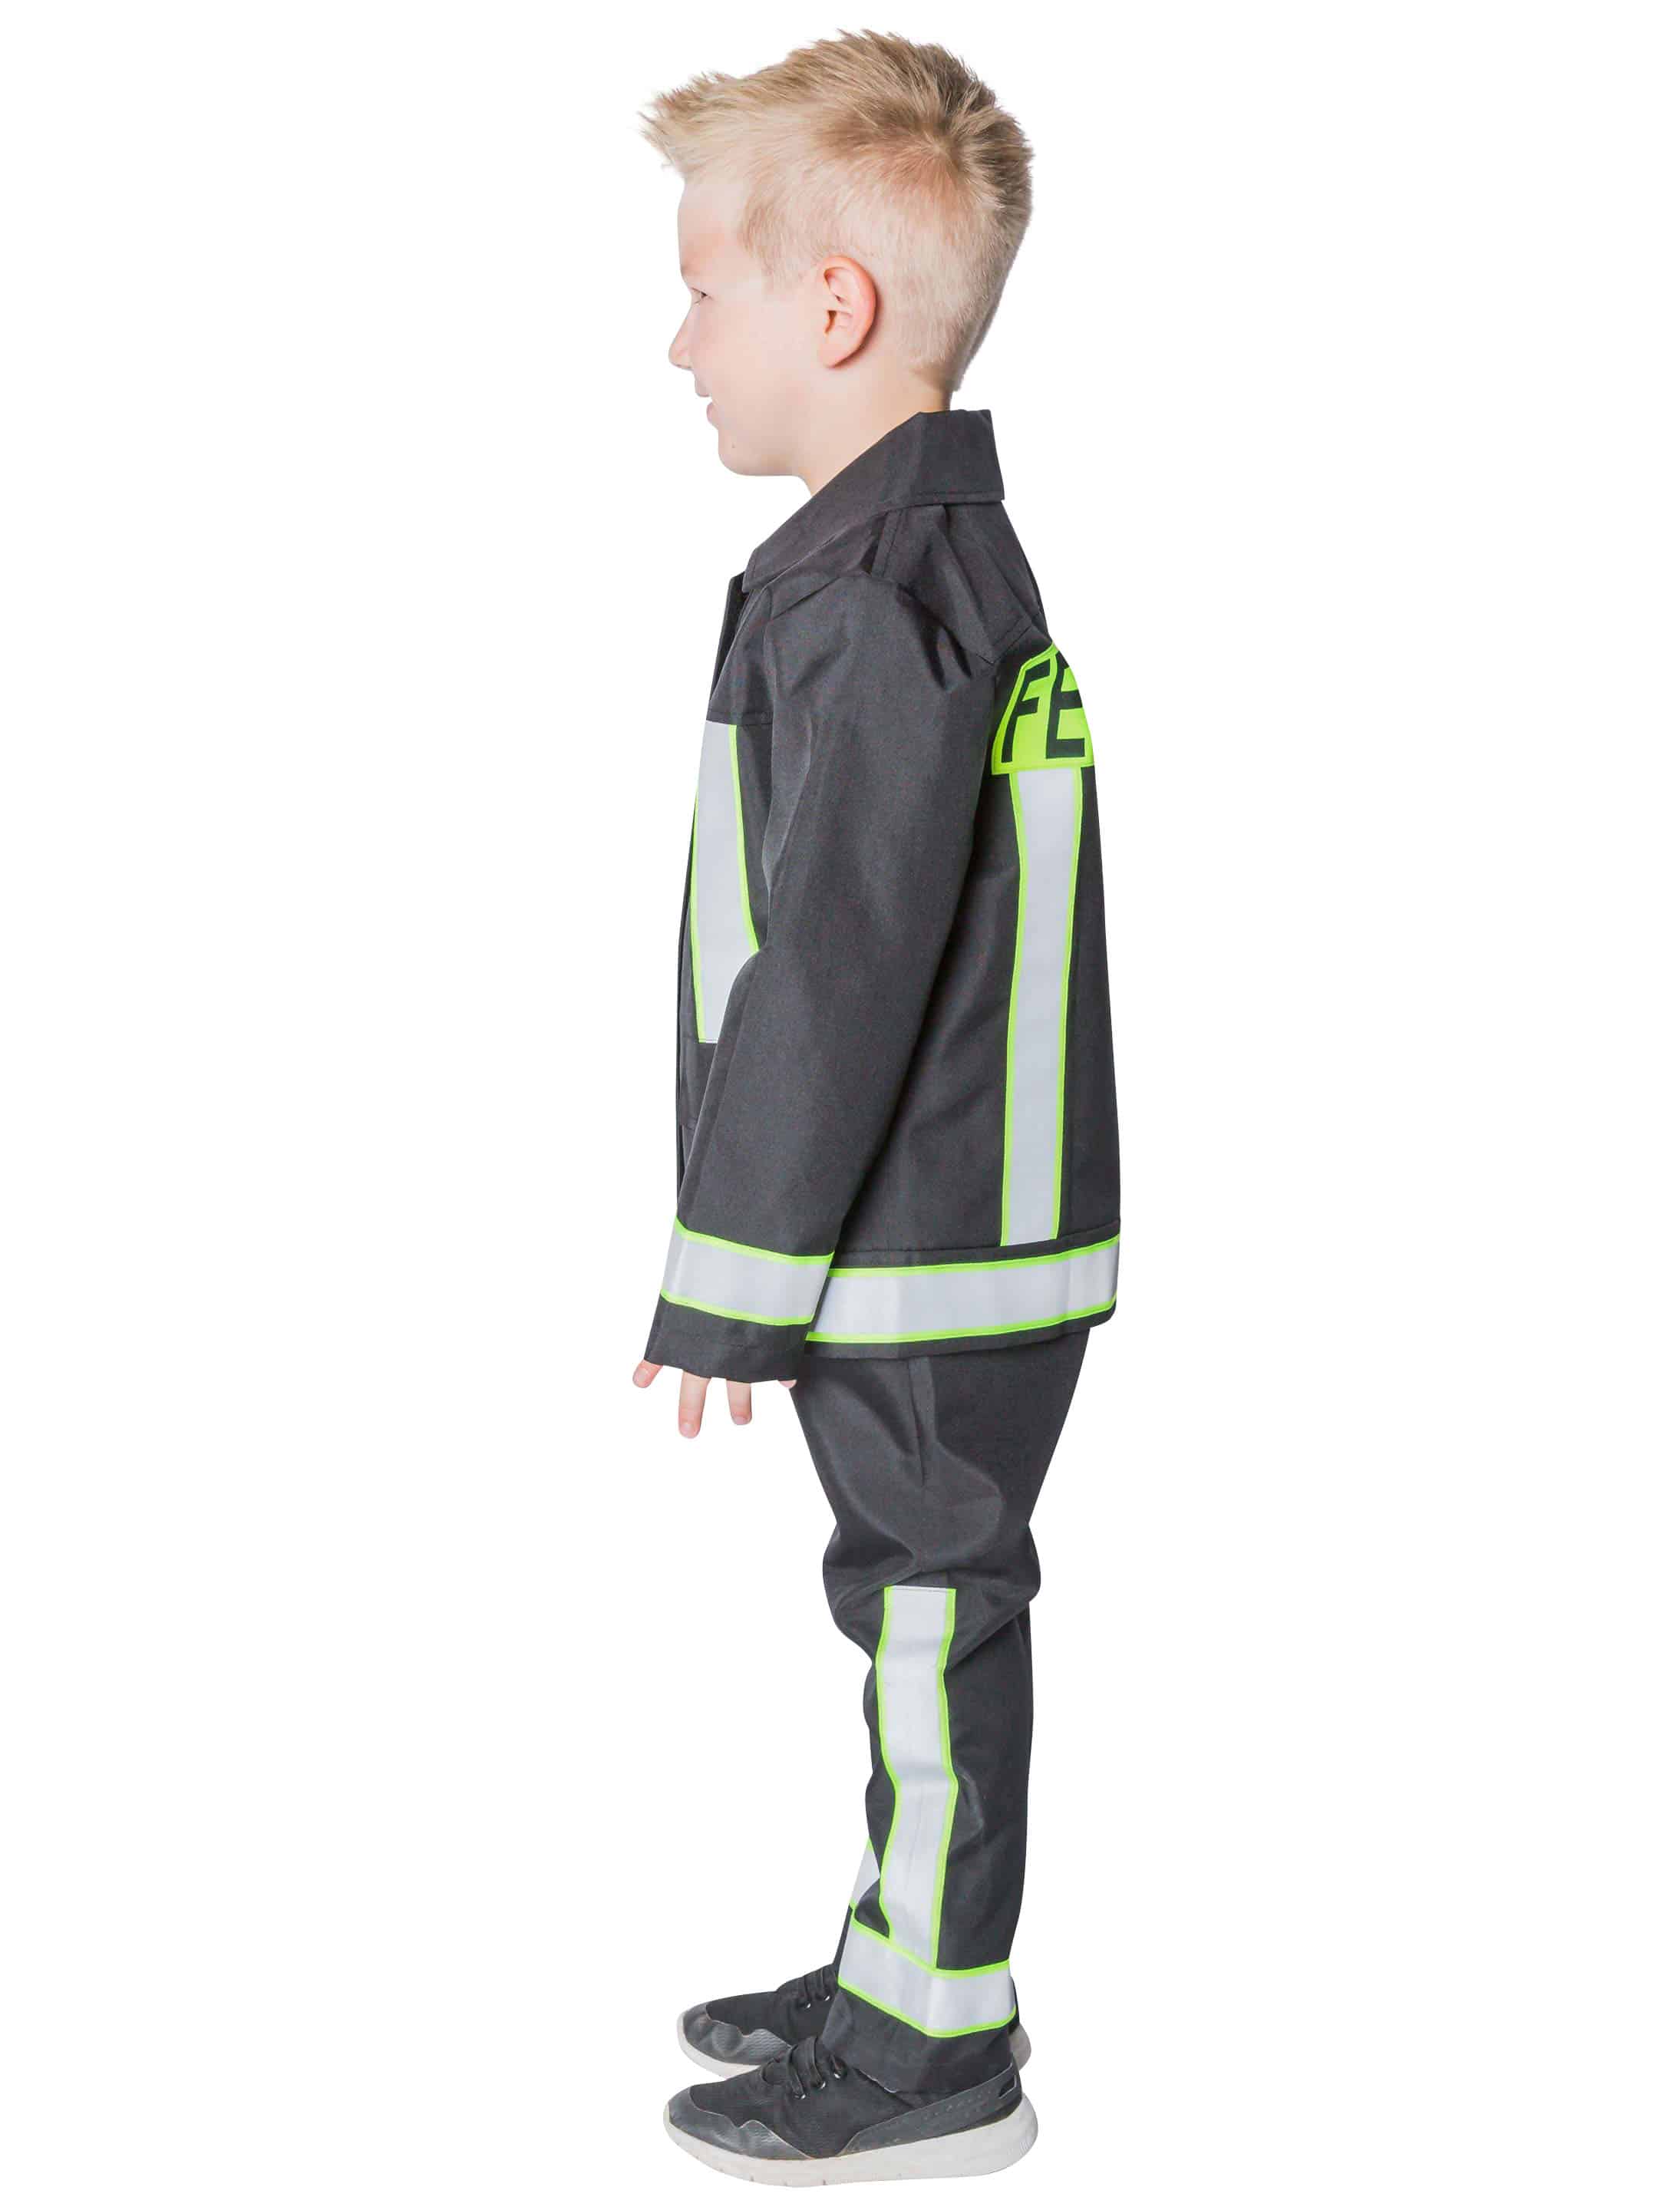 Kinder-Kostüm Feuerwehr 2-tlg. günstig kaufen bei PartyDeko.de